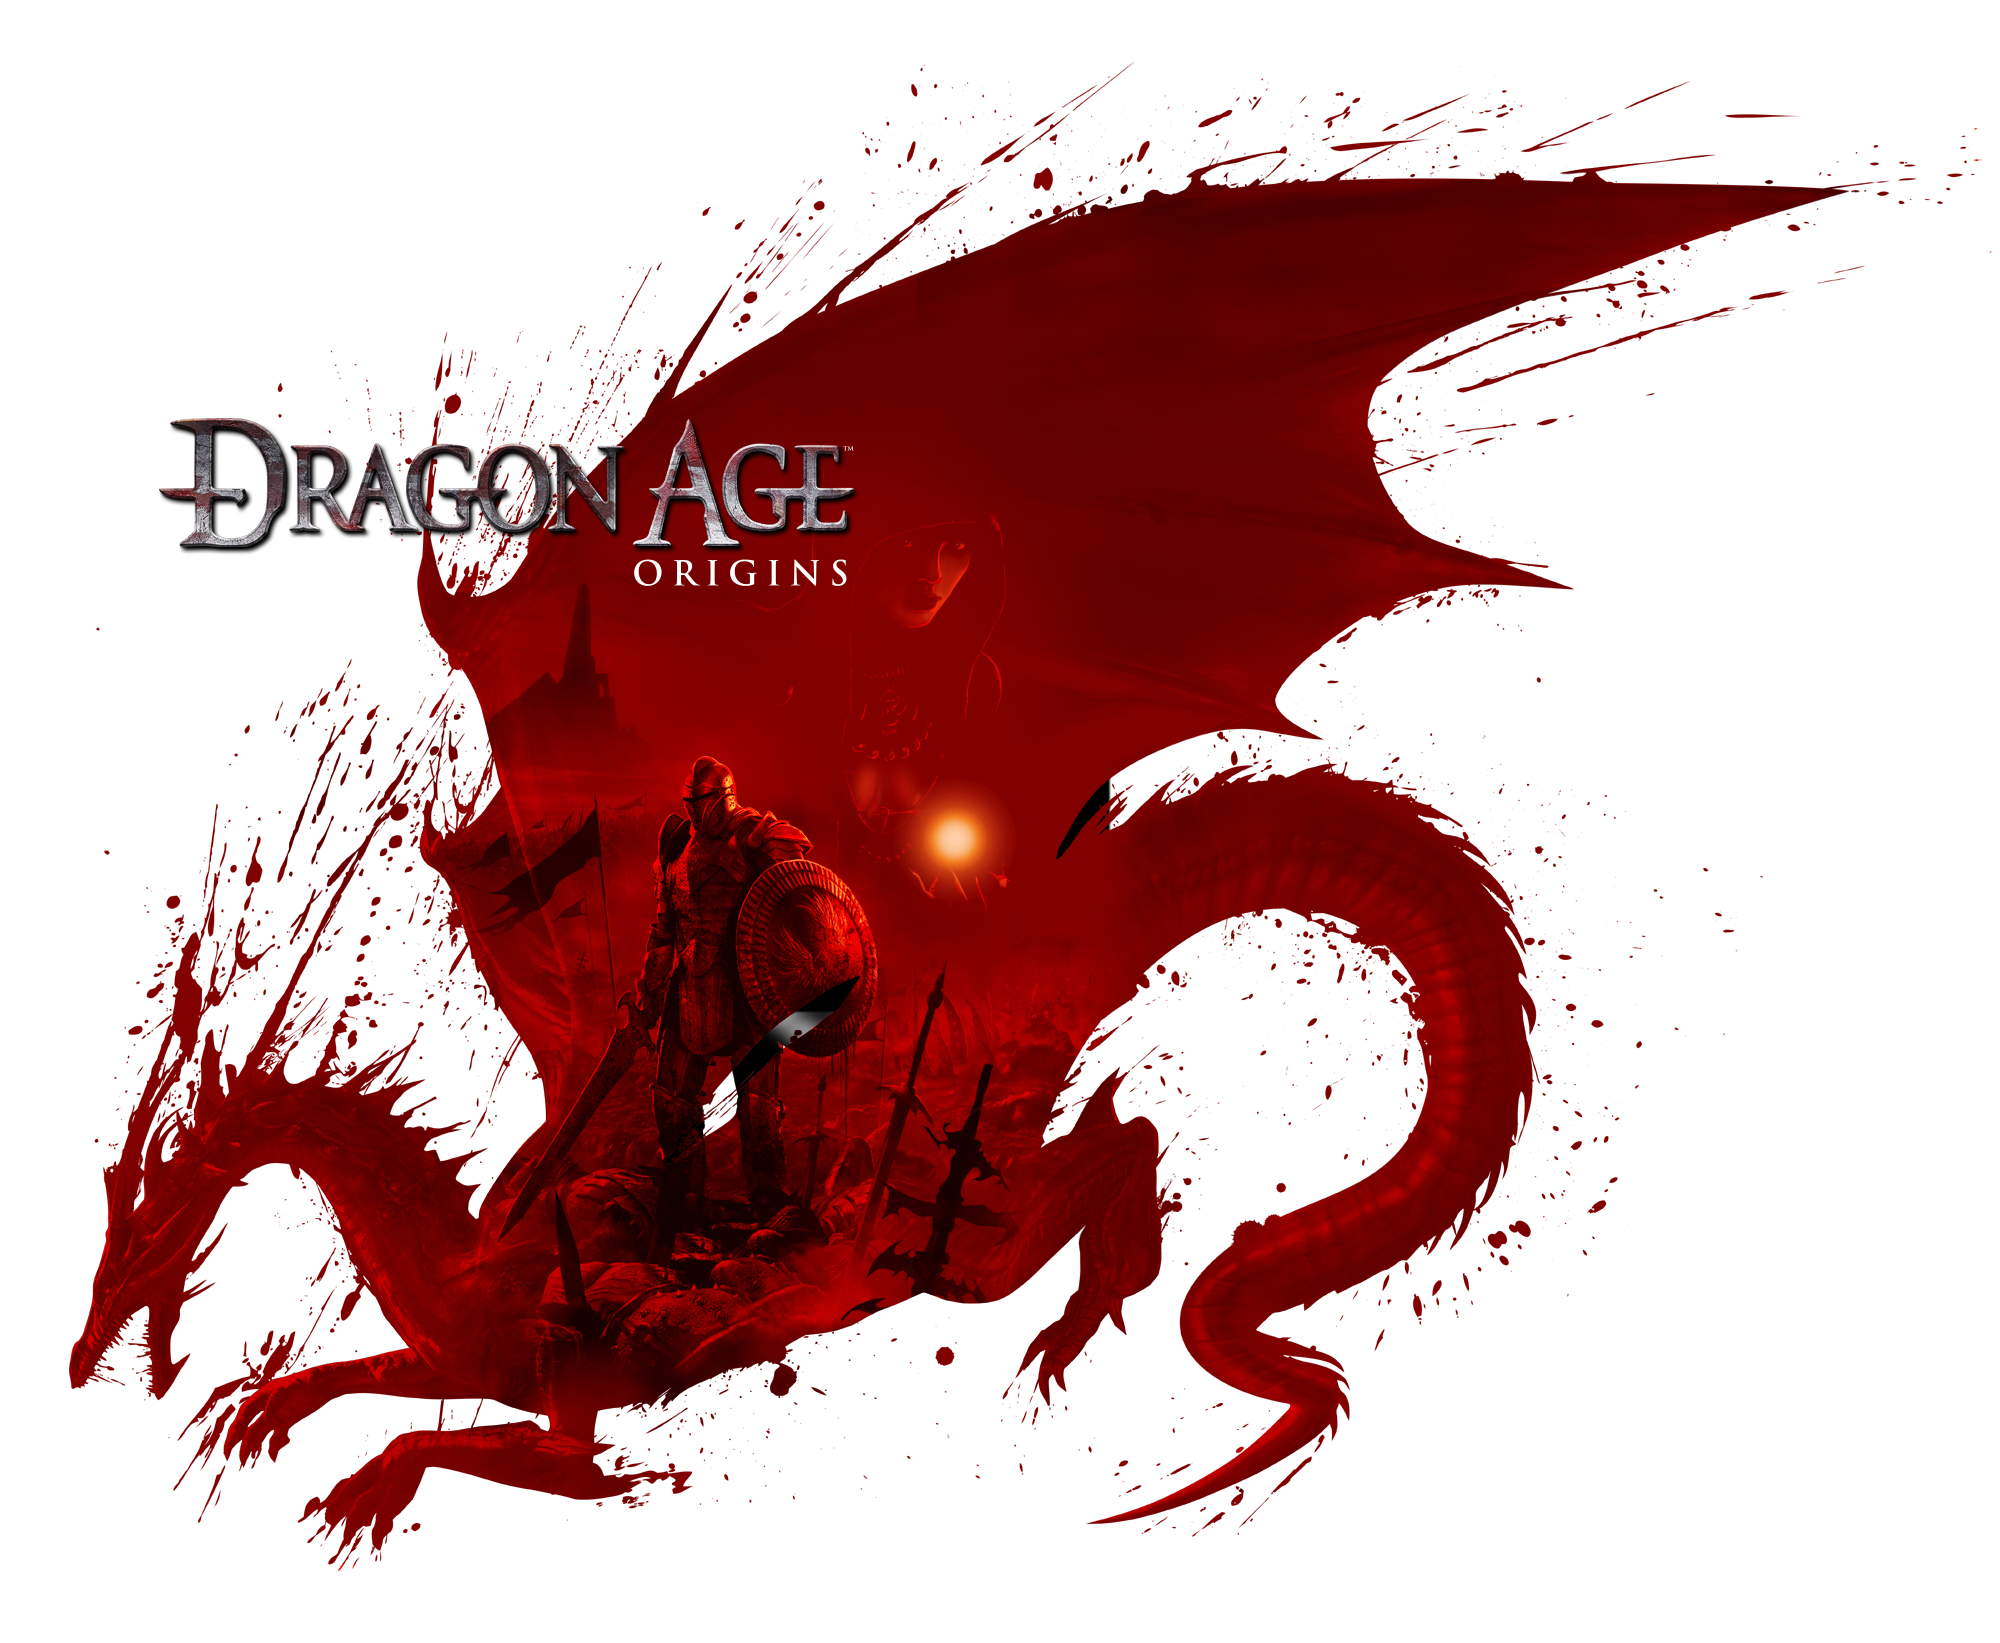 видеоигры, Dragon Age, Dragon Age: Origins - обои на рабочий стол